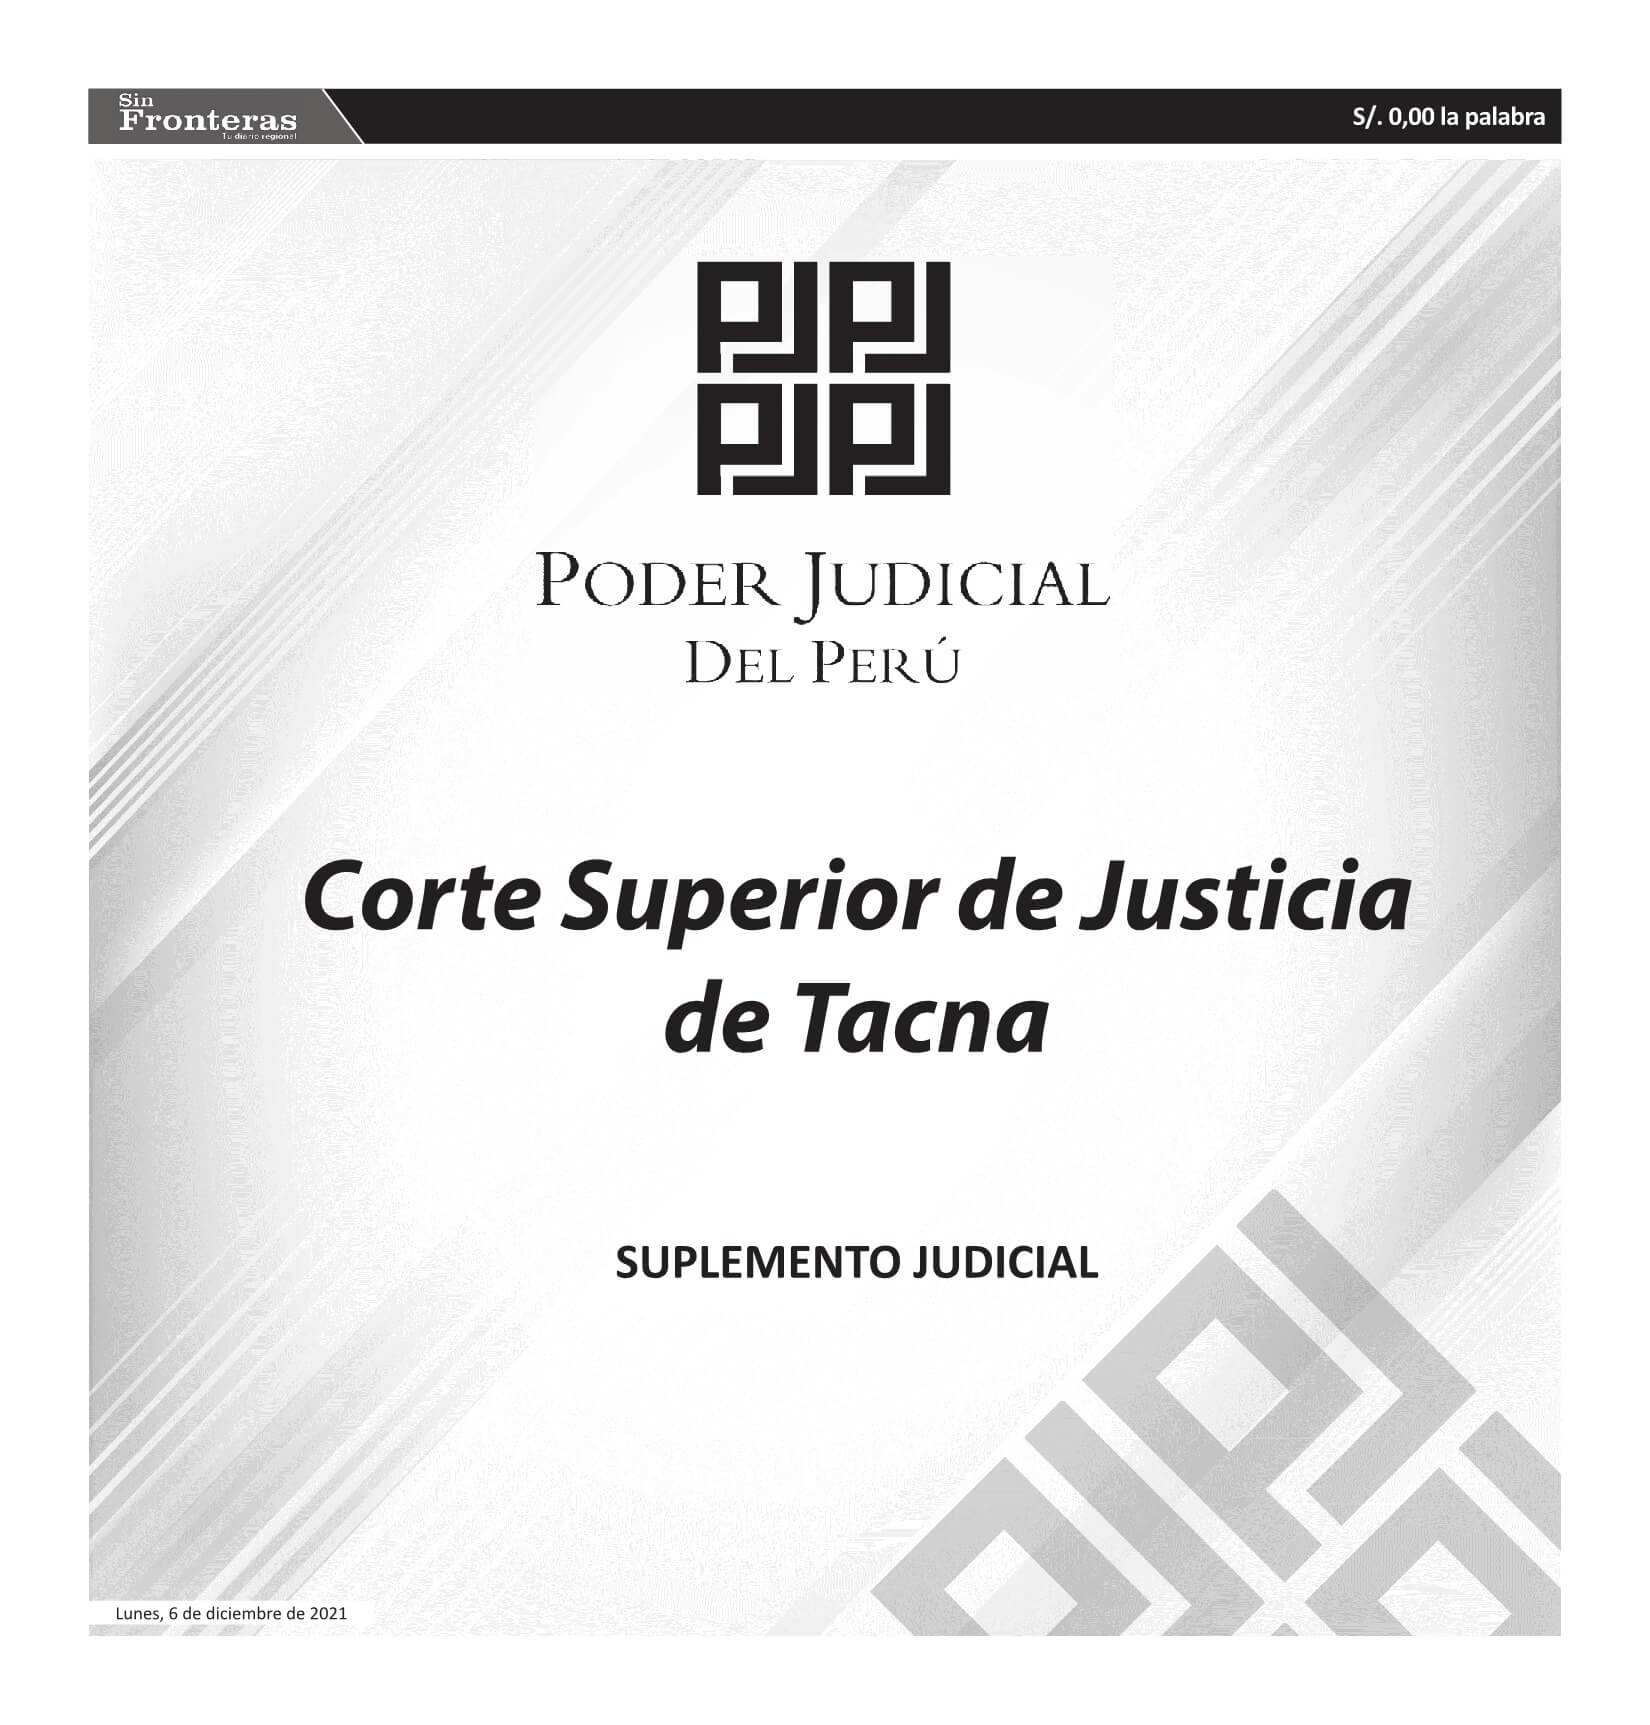  JUDICIALES TACNA 06122021